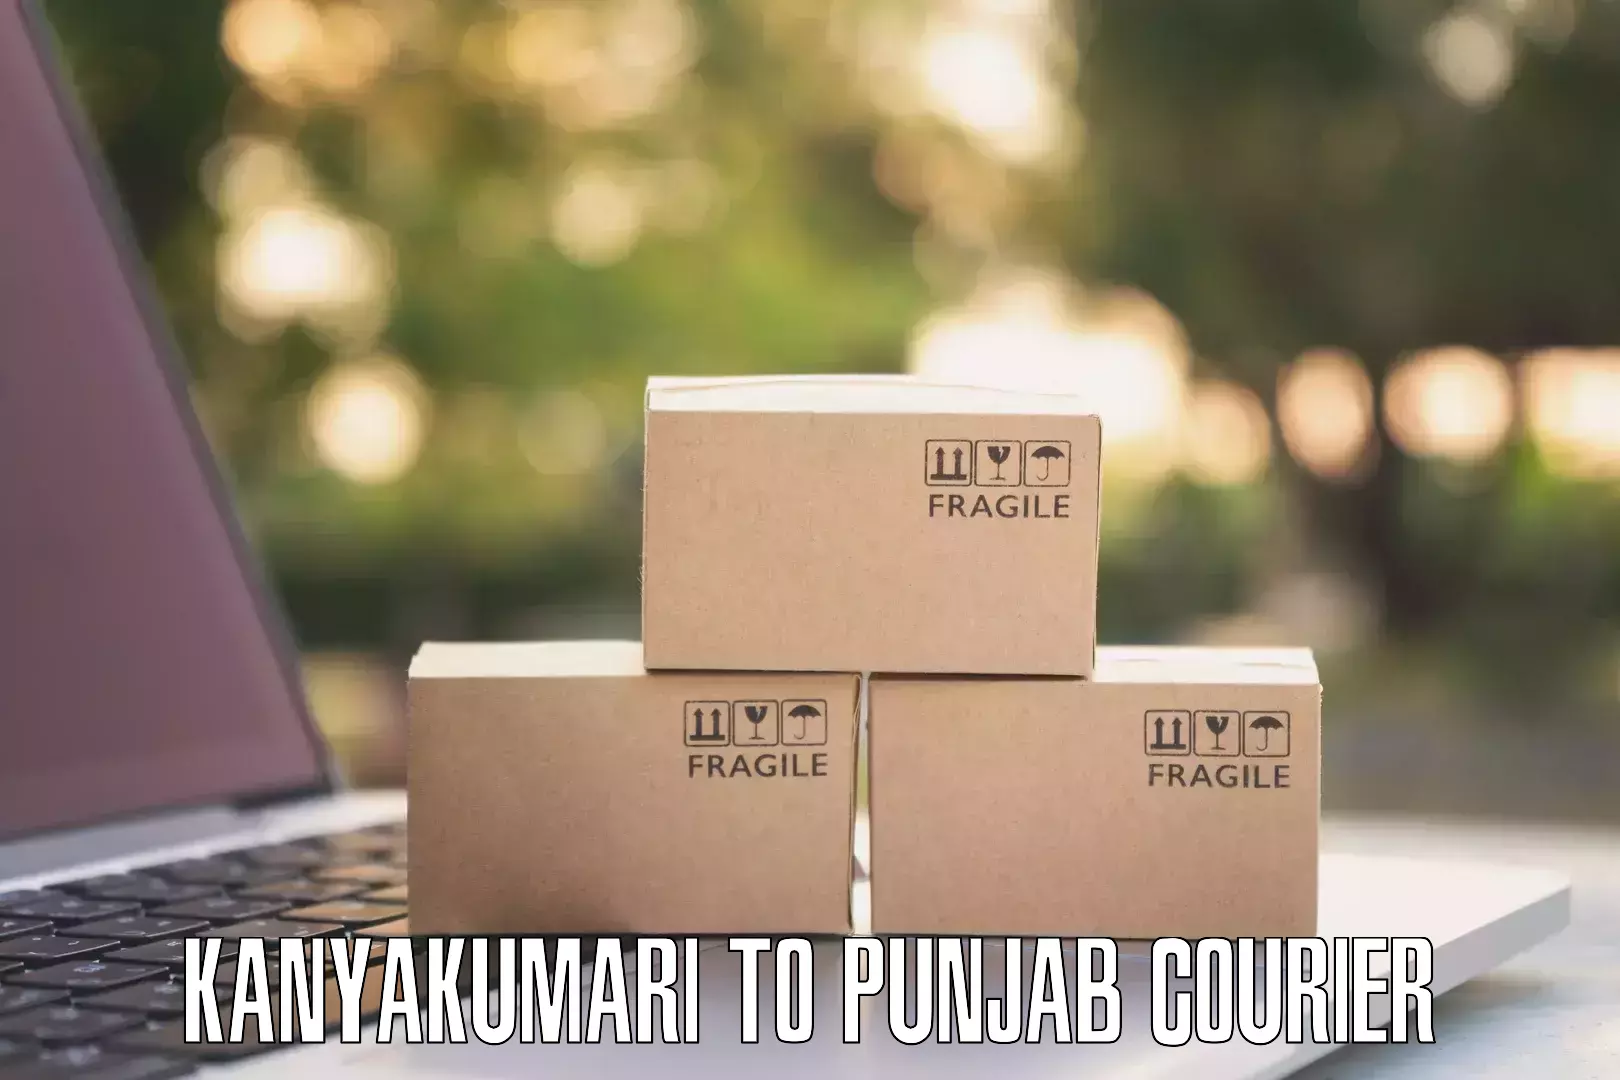 Smart parcel tracking Kanyakumari to Punjab